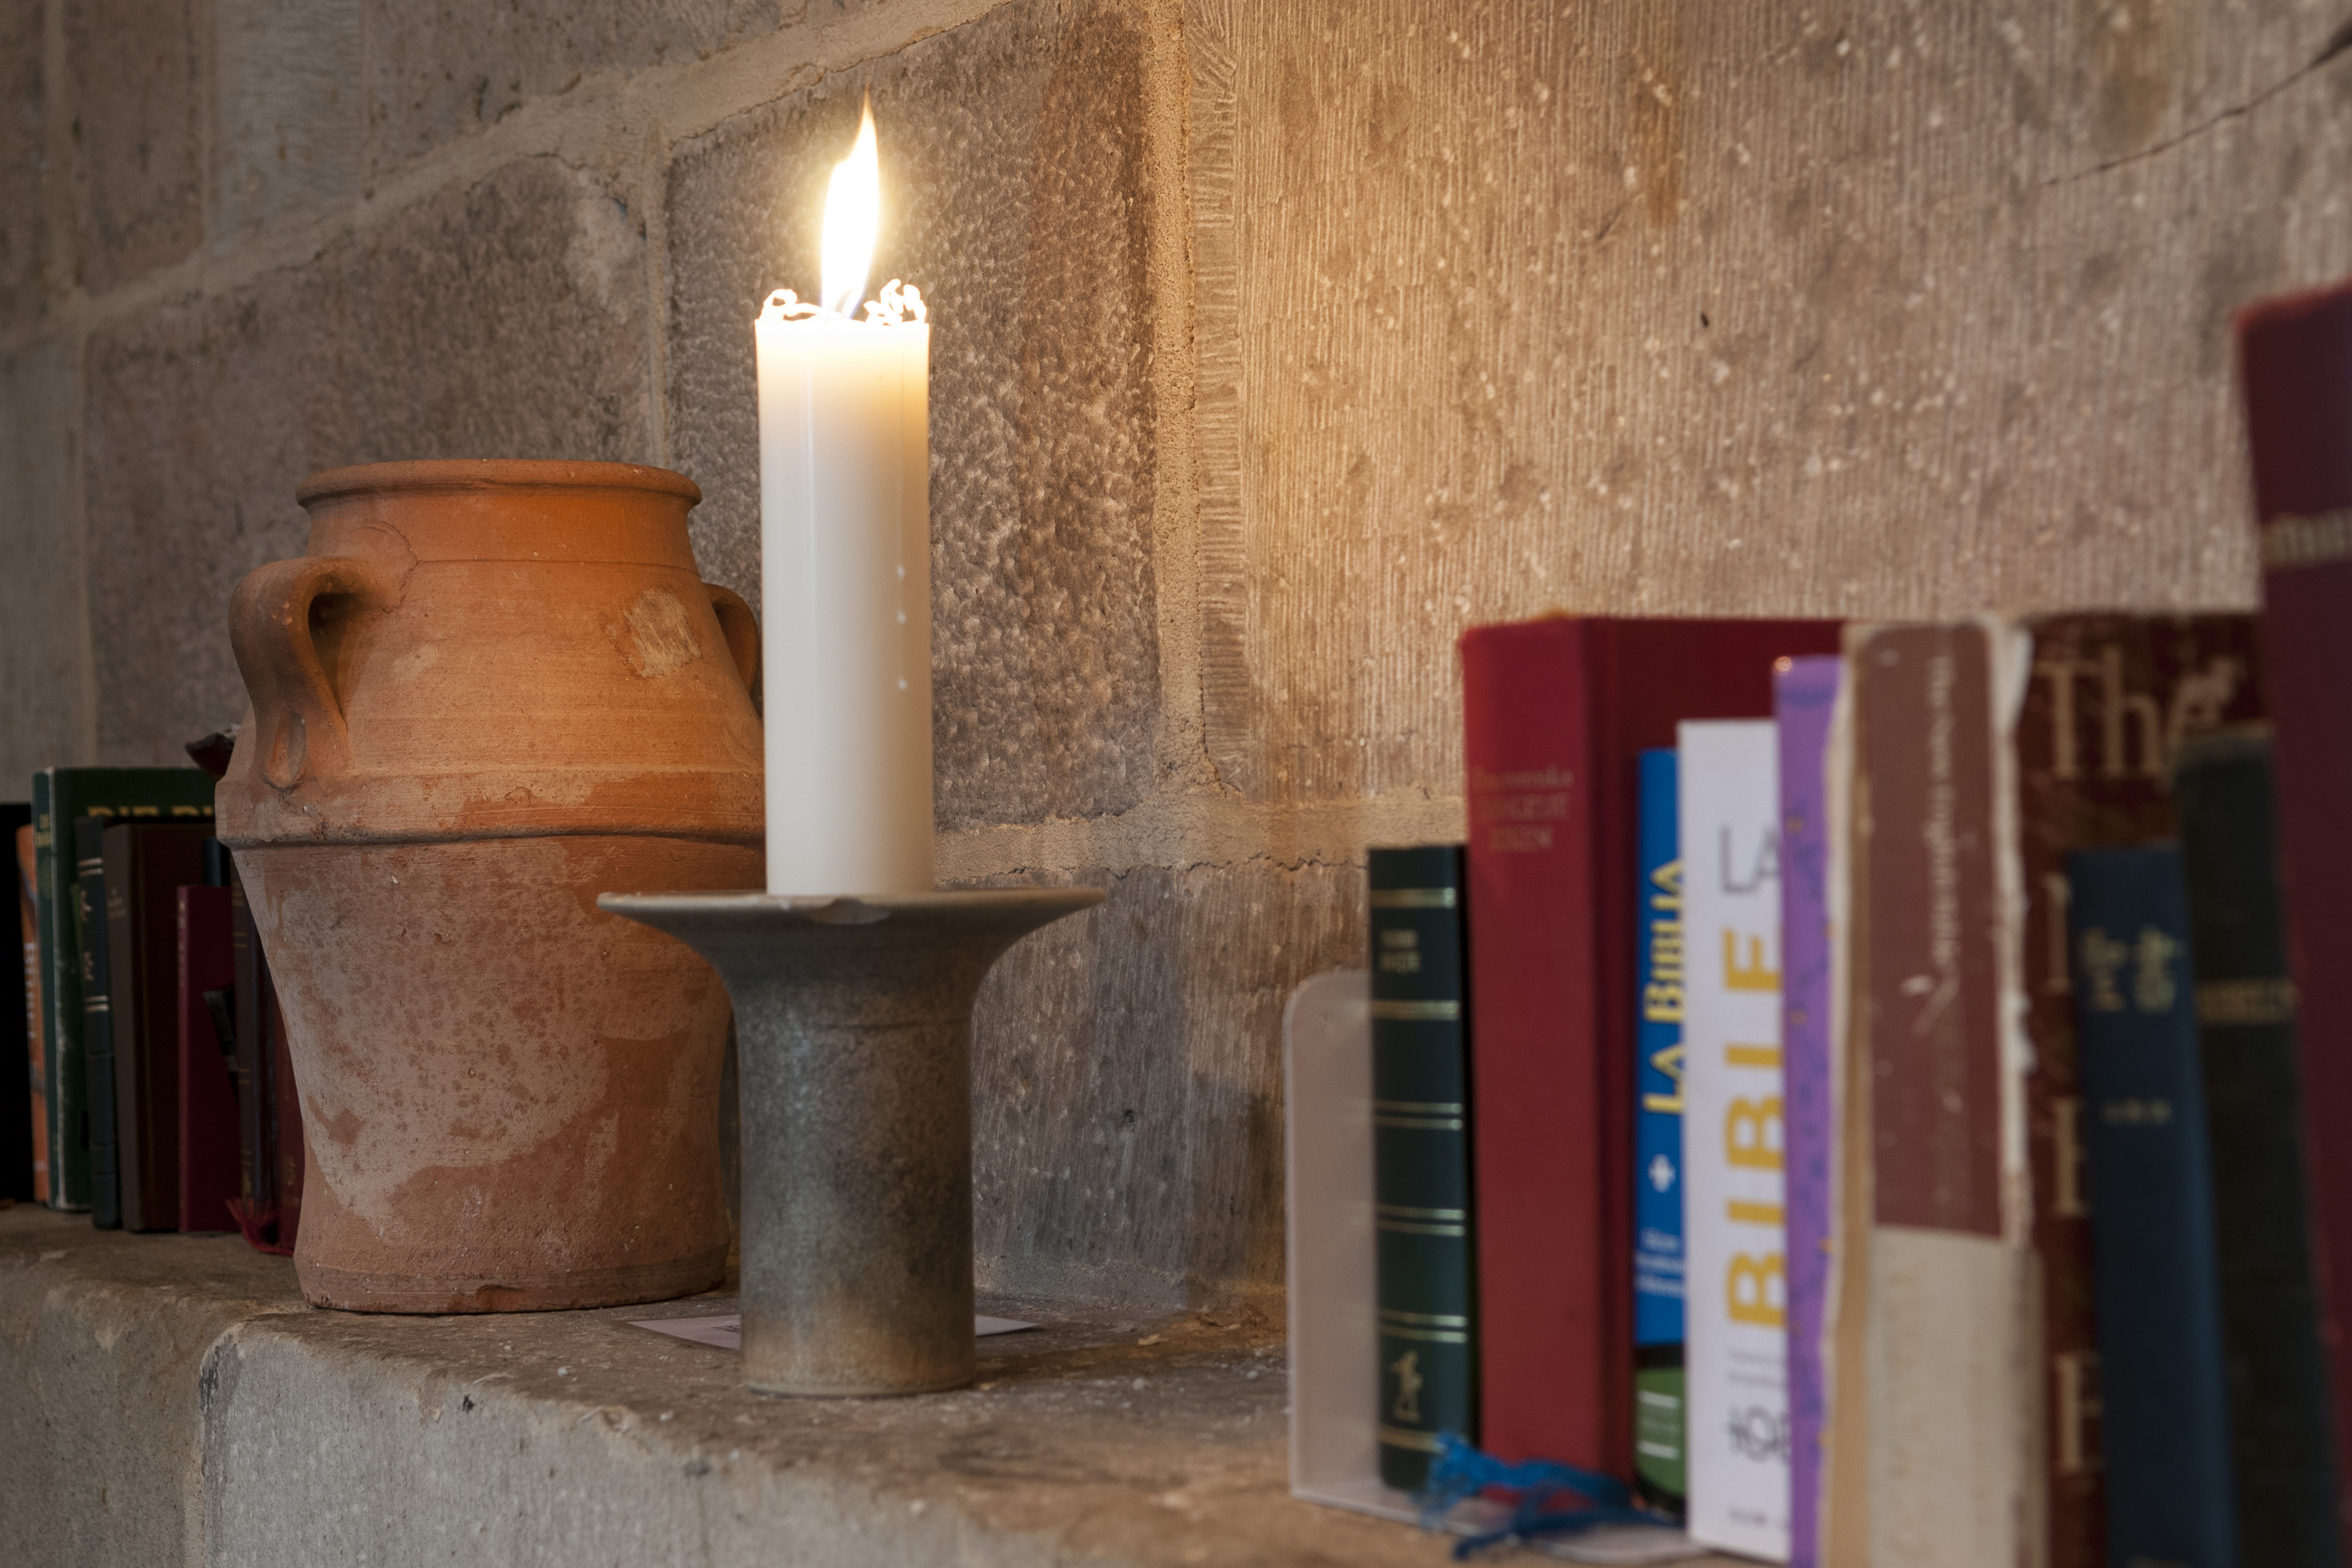 Biblar på olika språk, ett brinnande stearinljus och en kruka står på en stenhylla.